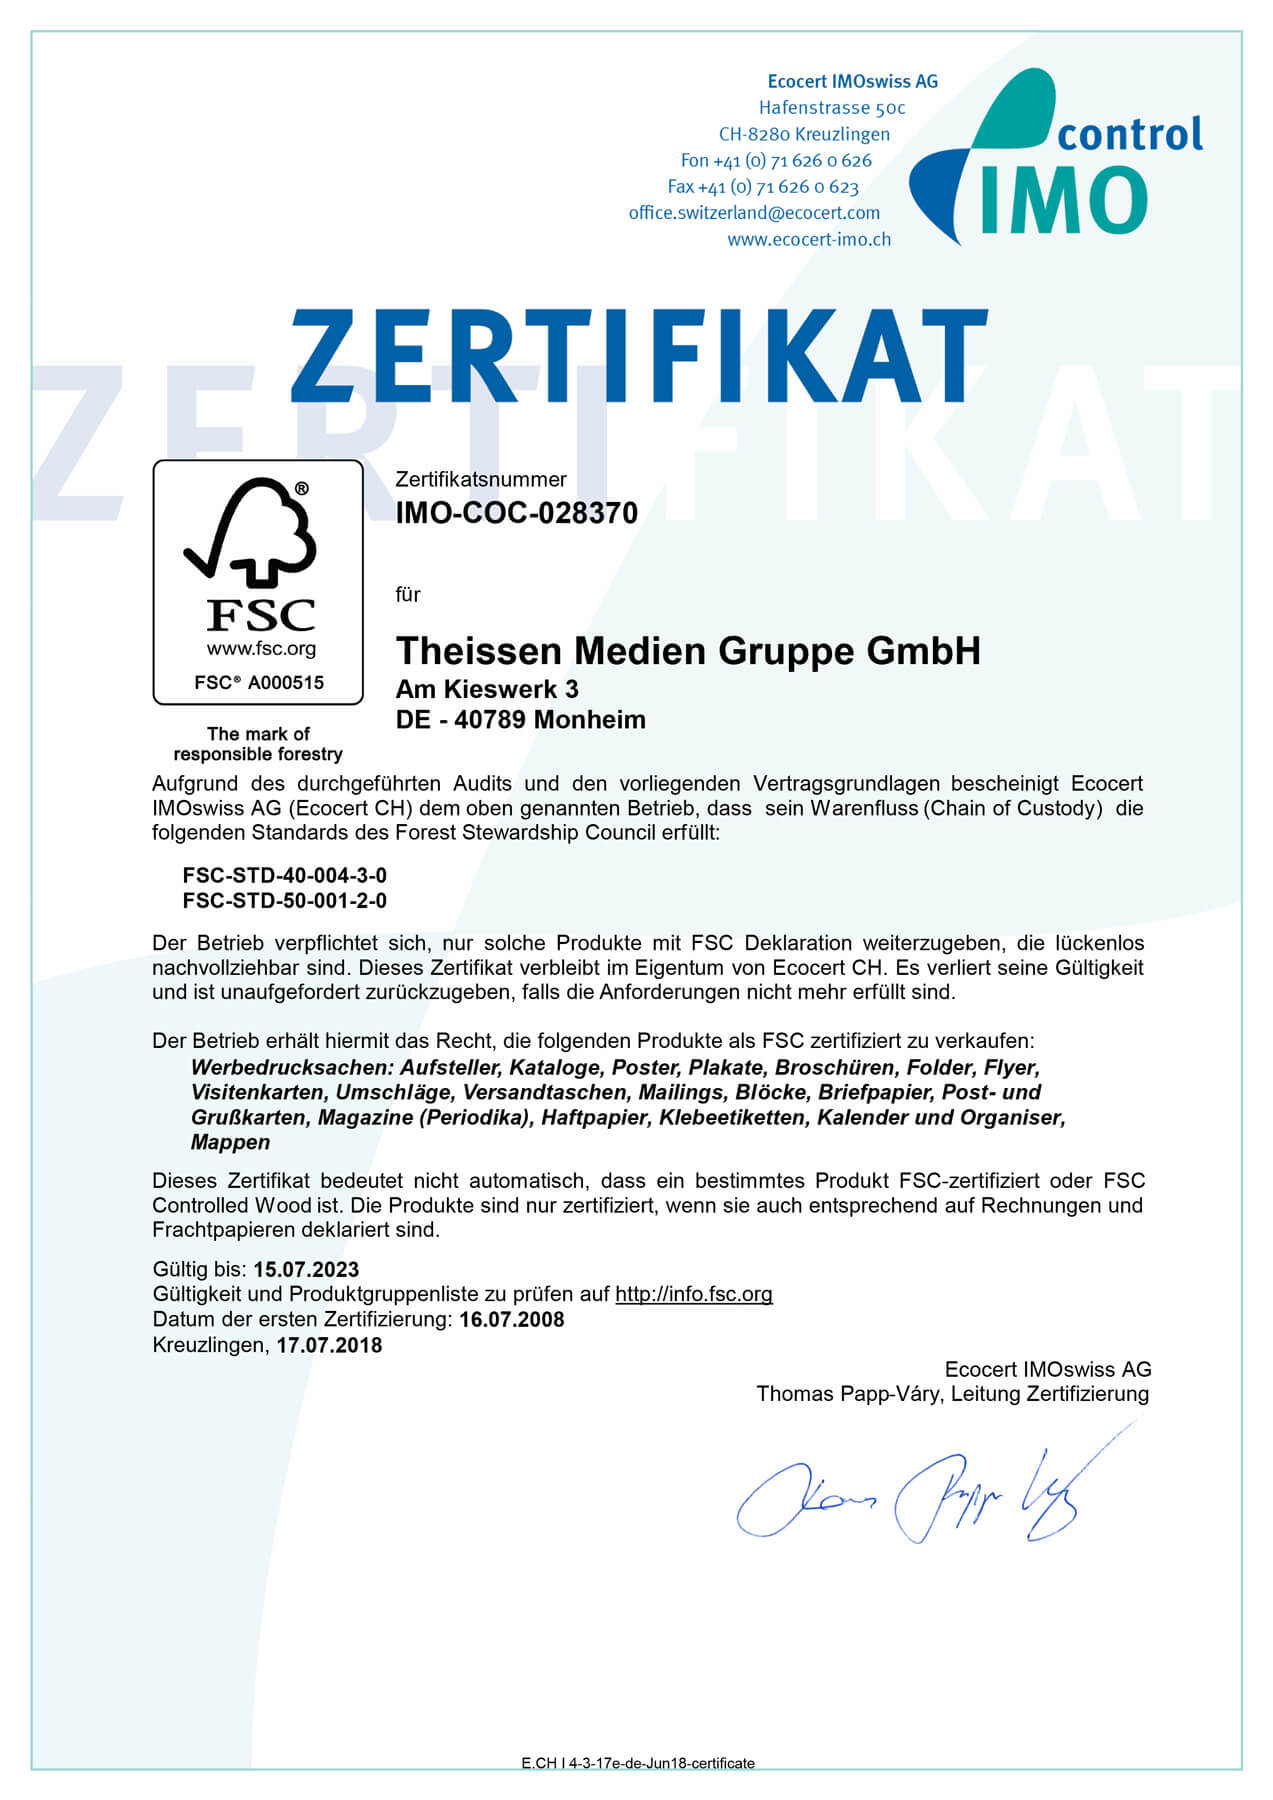 Theissen Medien Gruppe - FSC-Zertifikat